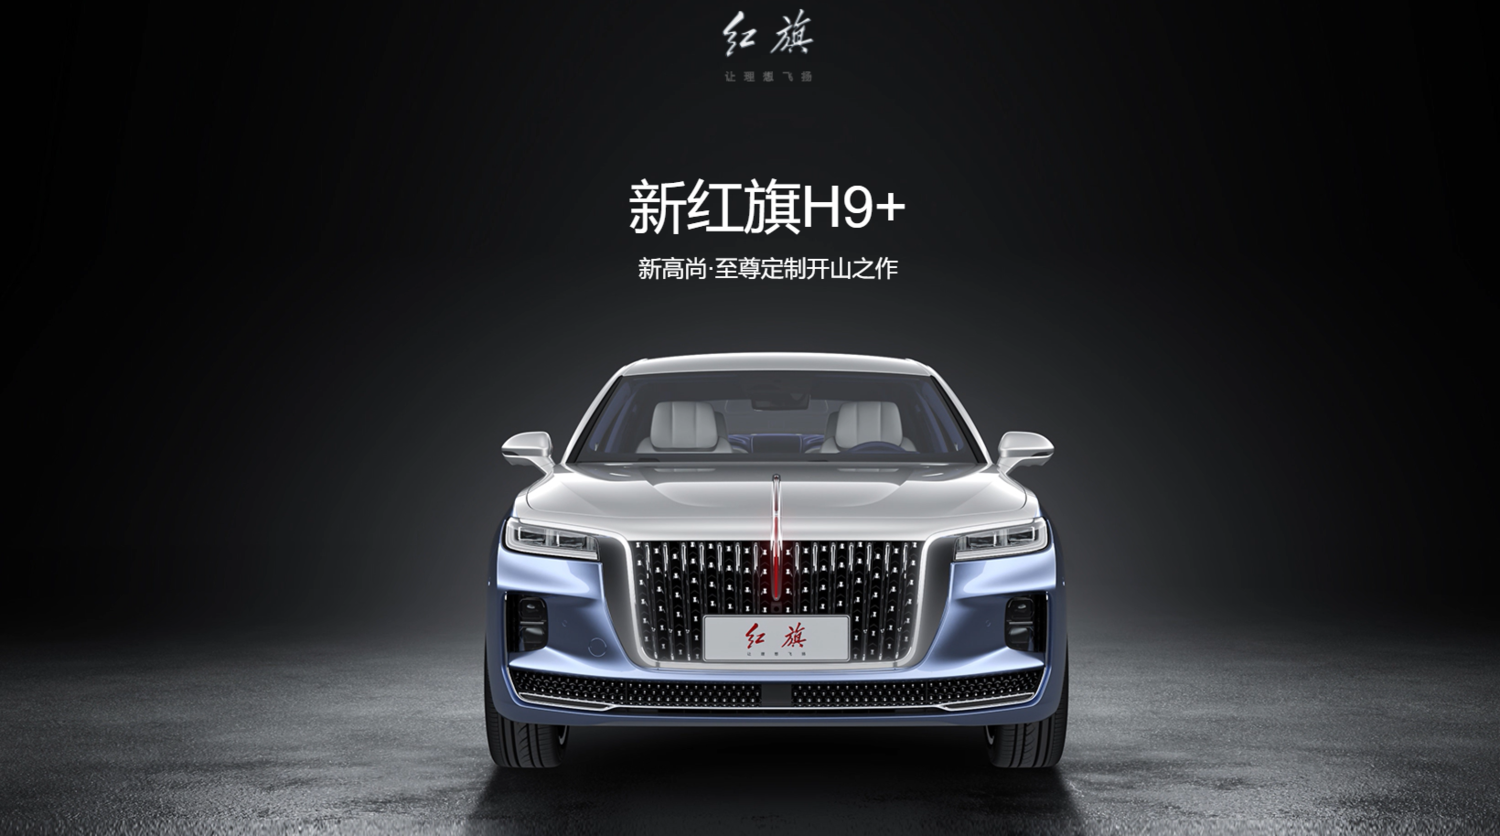 中國官媒吹捧成「國產豪華車標杆」車主批：紅旗汽車H9是工業垃圾